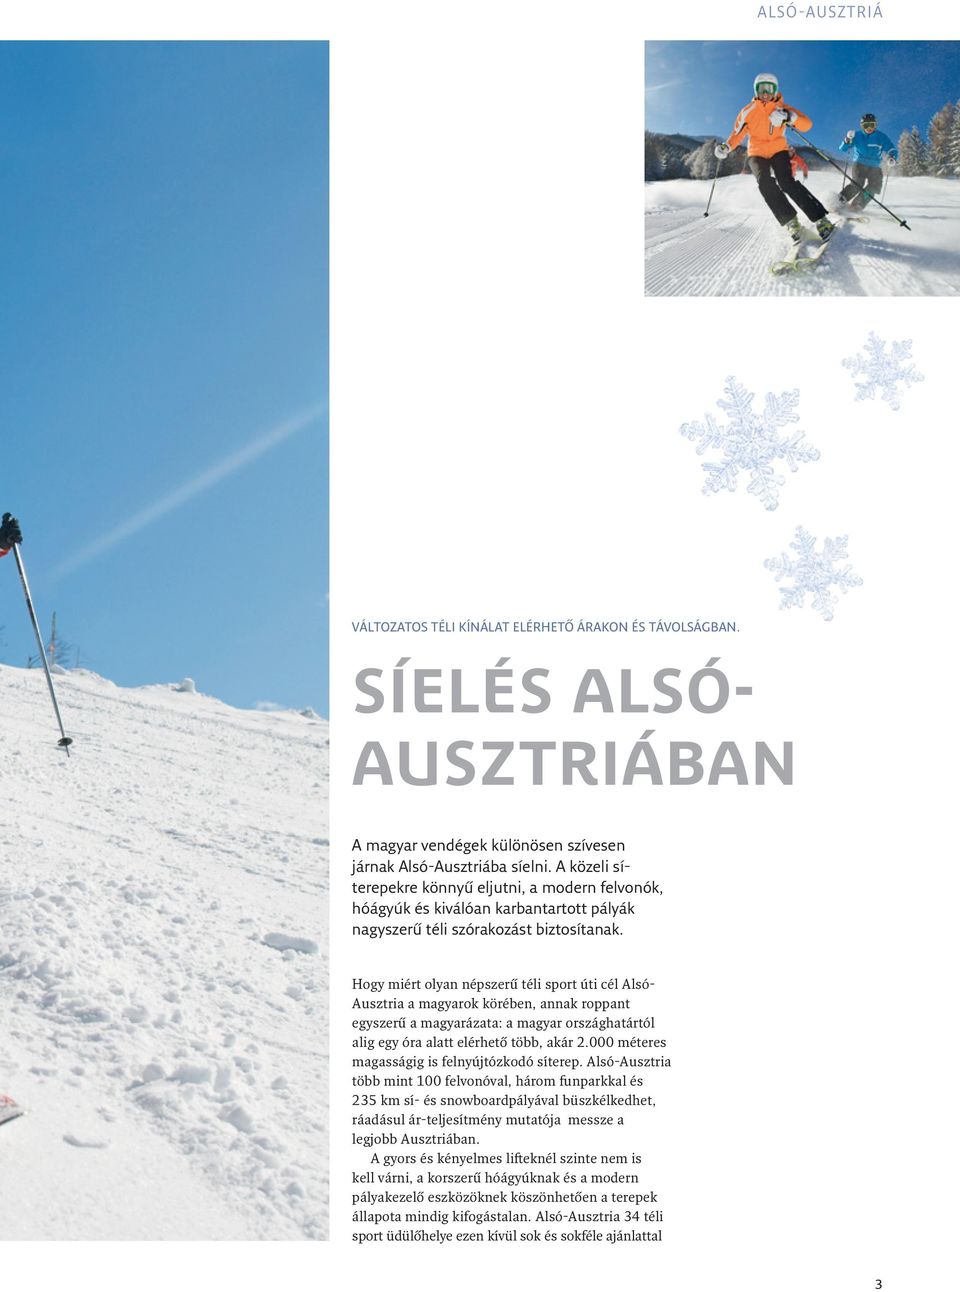 Hogy miért olyan népszerű téli sport úti cél Alsó- Ausztria a magyarok körében, annak roppant egyszerű a magyarázata: a magyar országhatártól alig egy óra alatt elérhető több, akár 2.